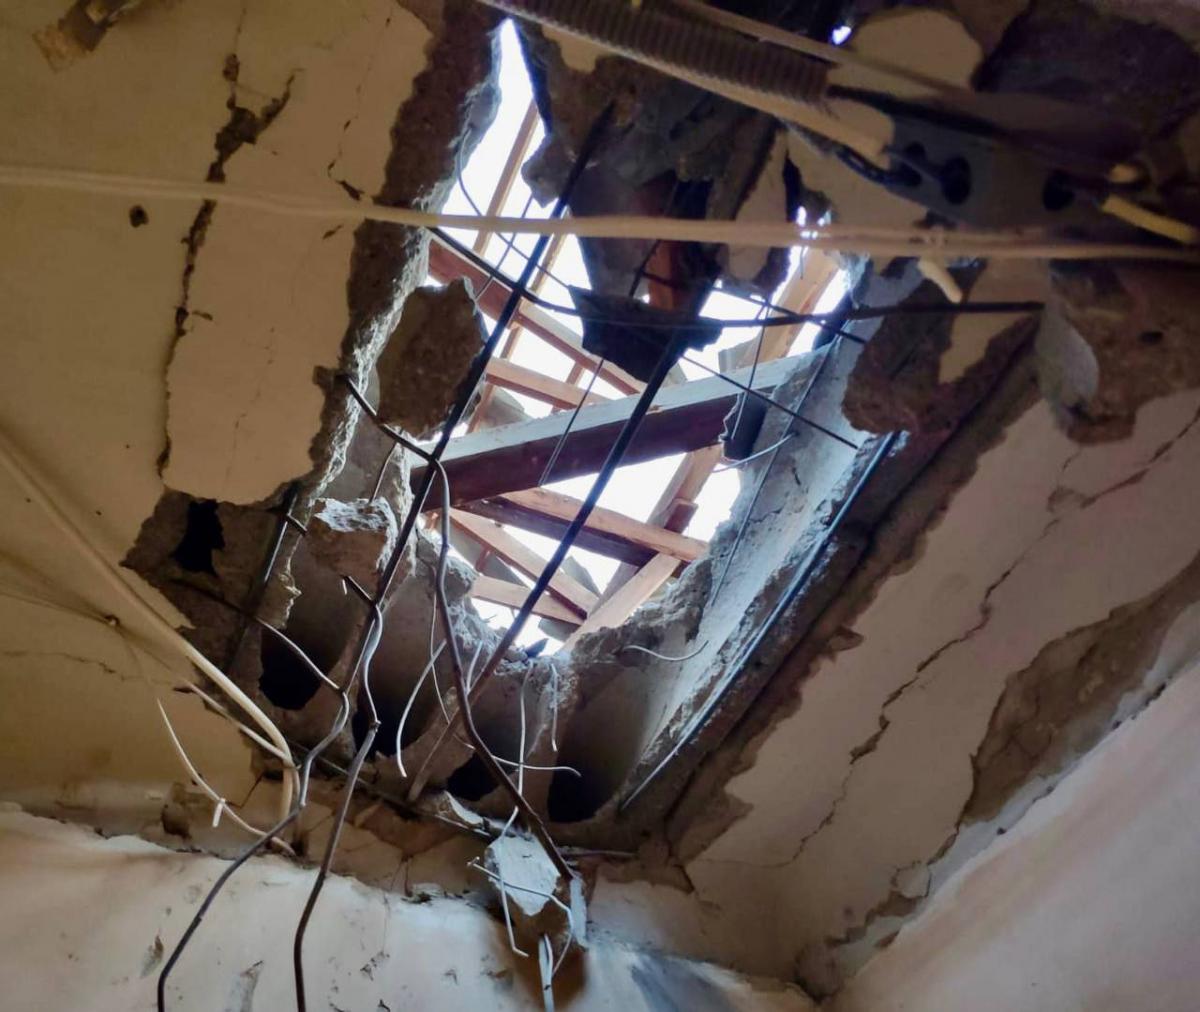 Враг направил по жилым кварталам 80 реактивных снарядов/ фото Валентин Резниченко в Telegram